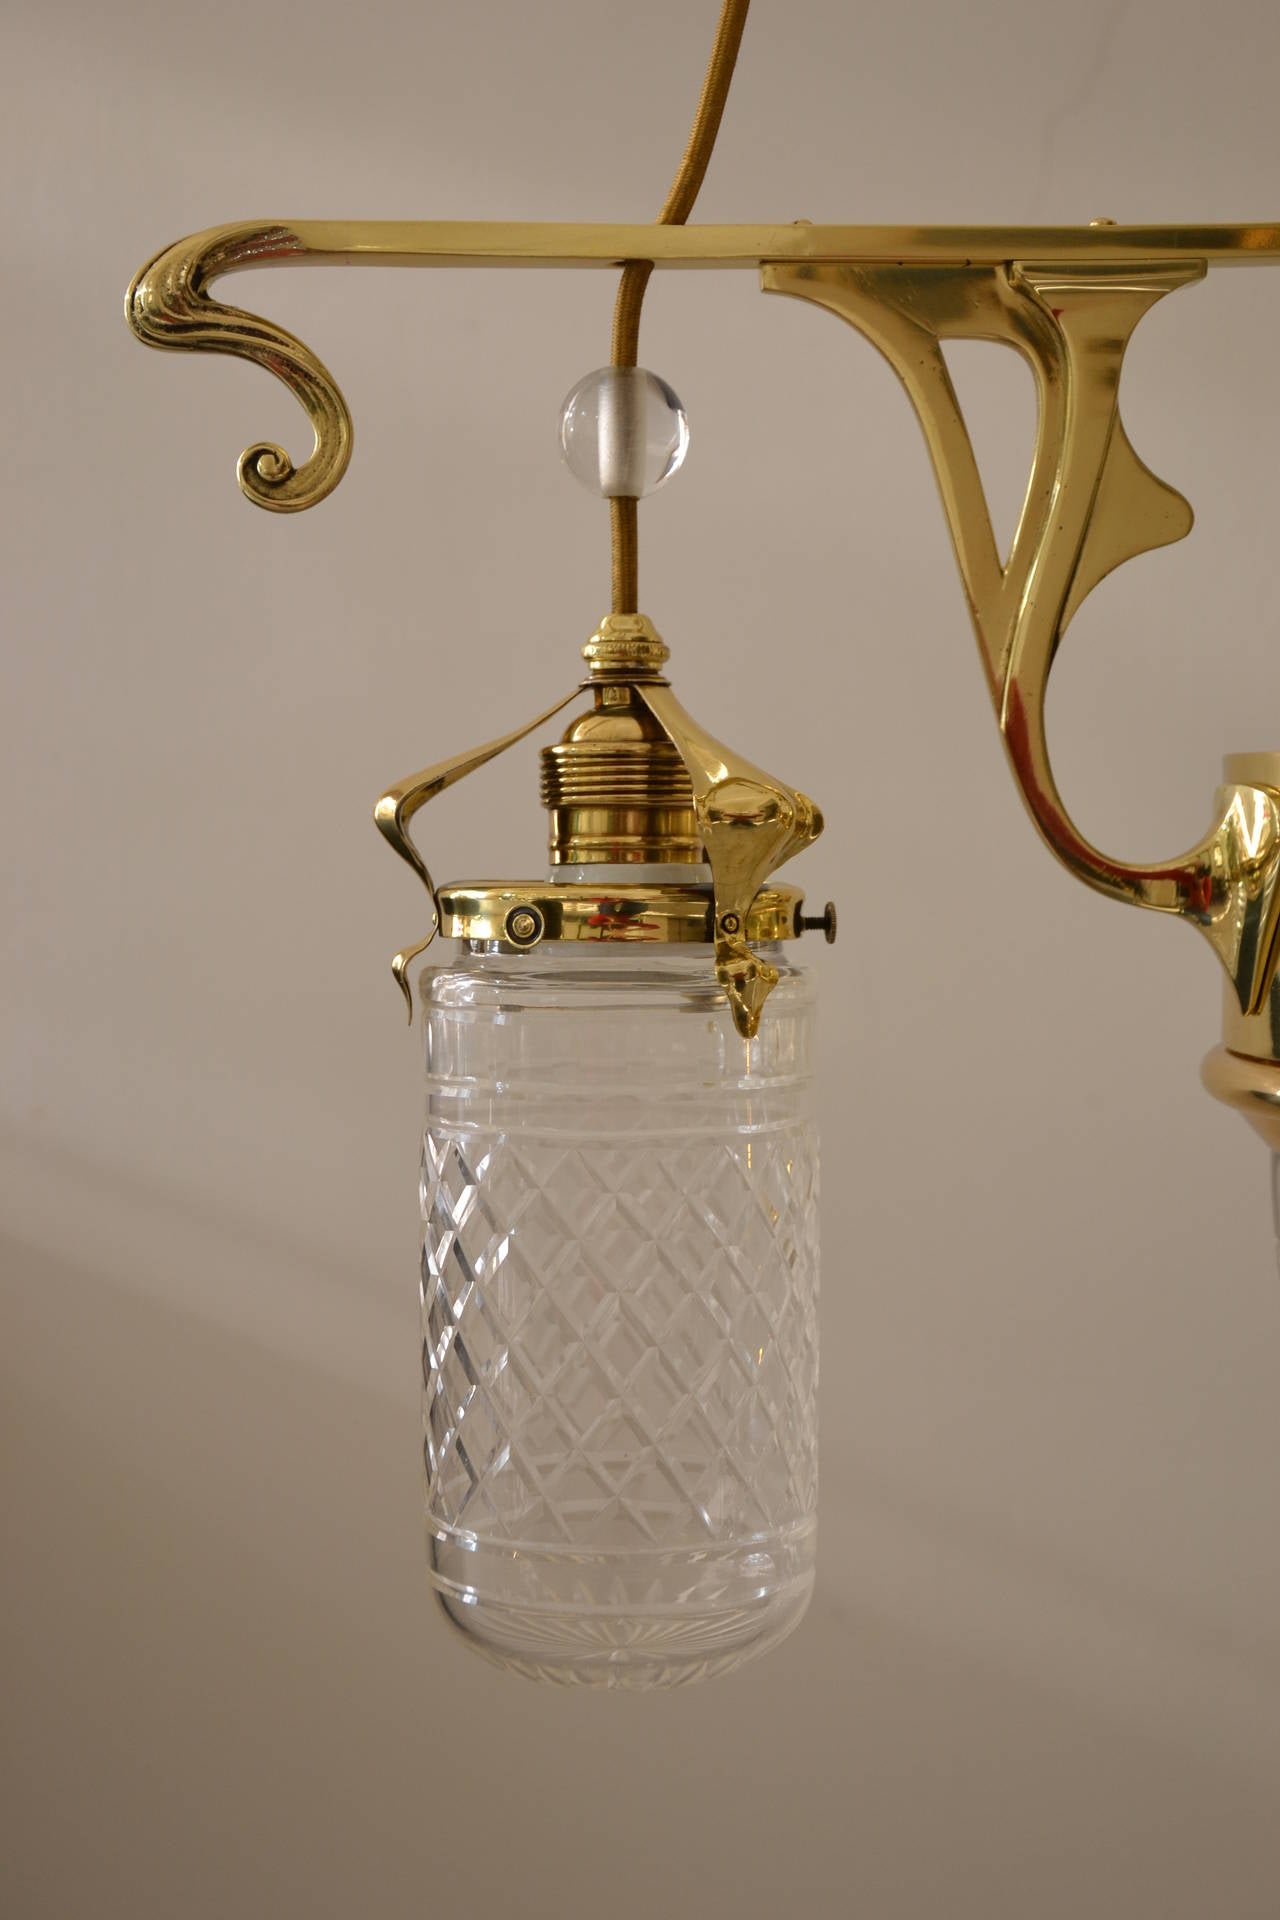 Austrian Art Nouveau Four-Light Ceiling Lamp with Original Glass Shade